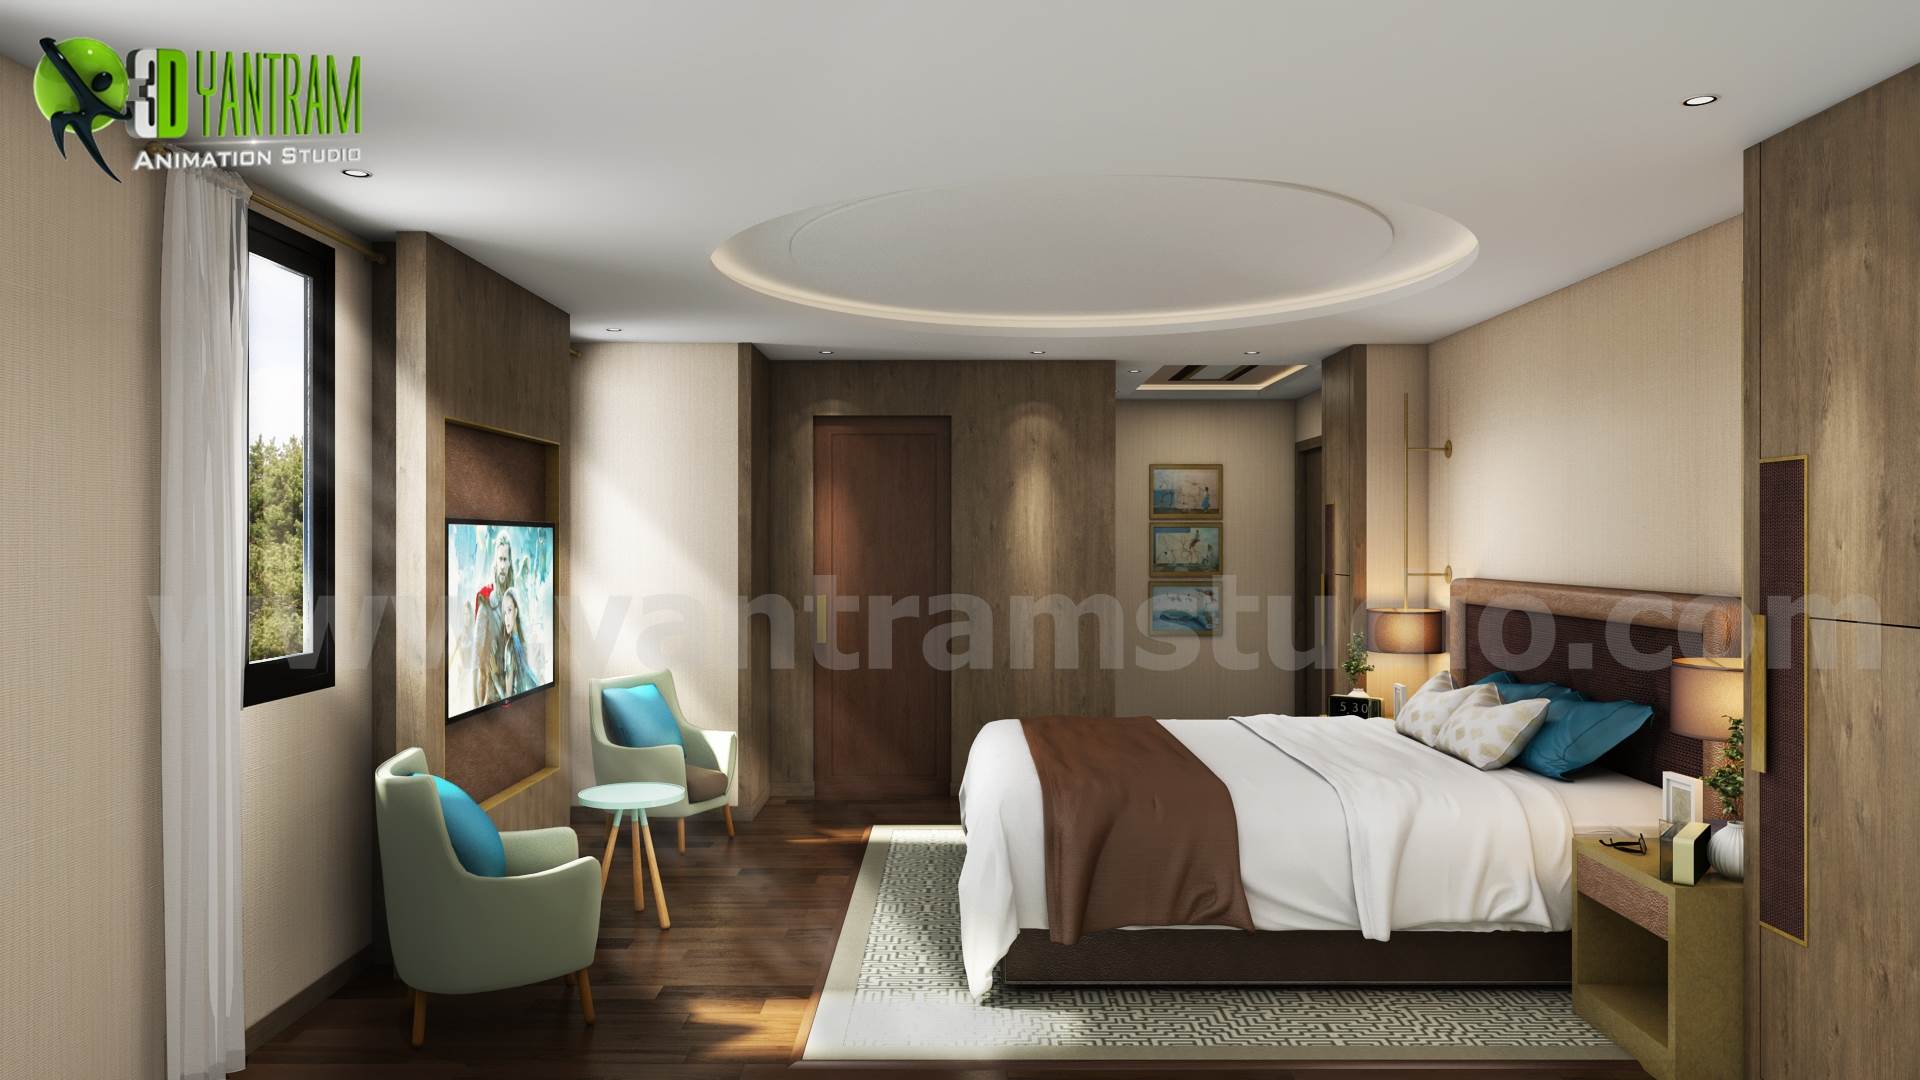 Creative Modern Bedroom Design Ideas.jpg -  by Yantramarchitecturaldesignstudio